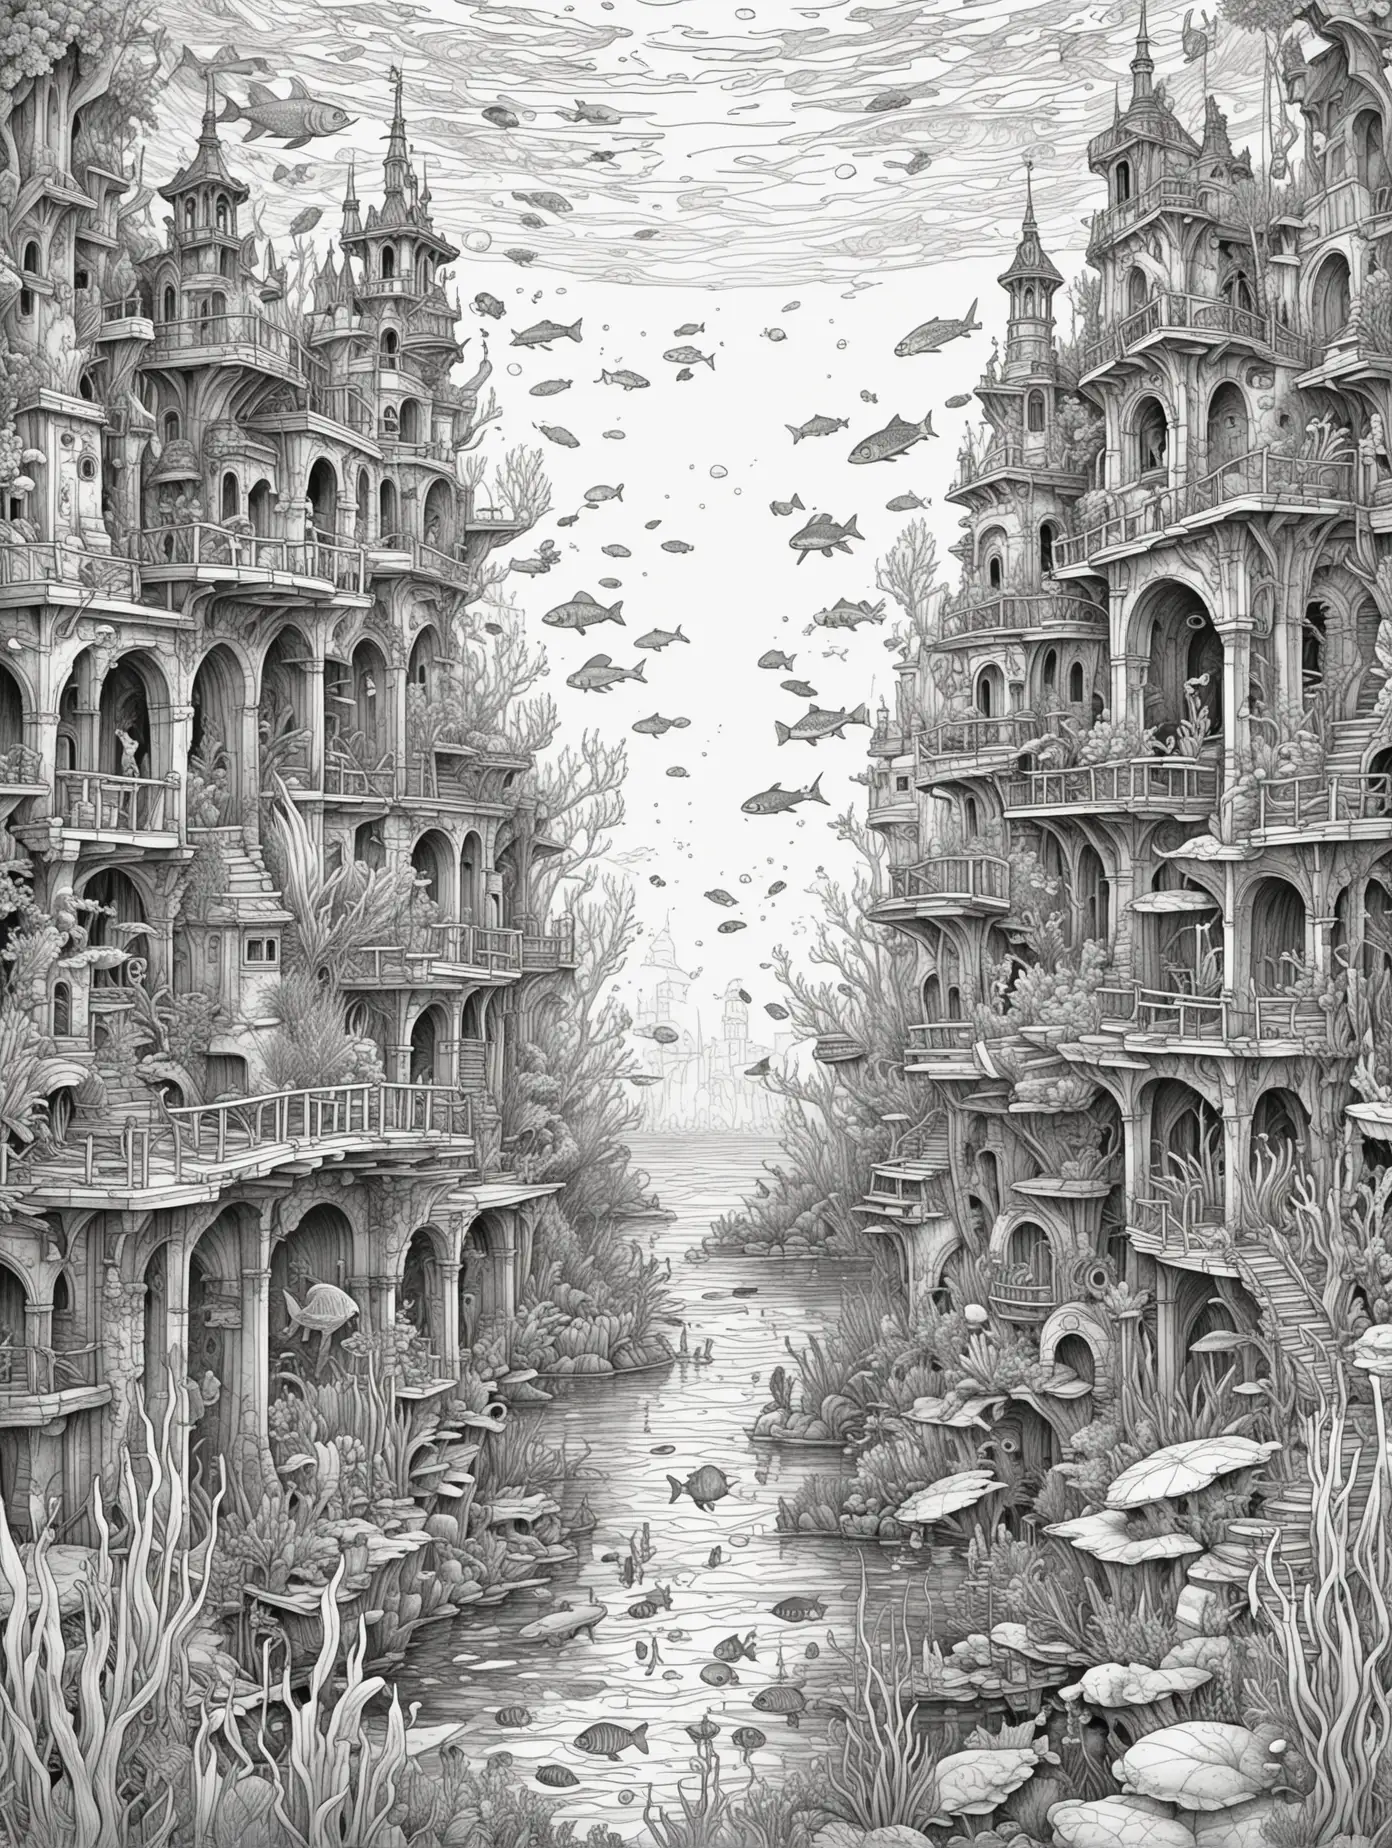 Bitte erstelle eine Malbuchseite für Erwachsene zum Thema "Unterwasserwelten - versunkene Stadt", white background